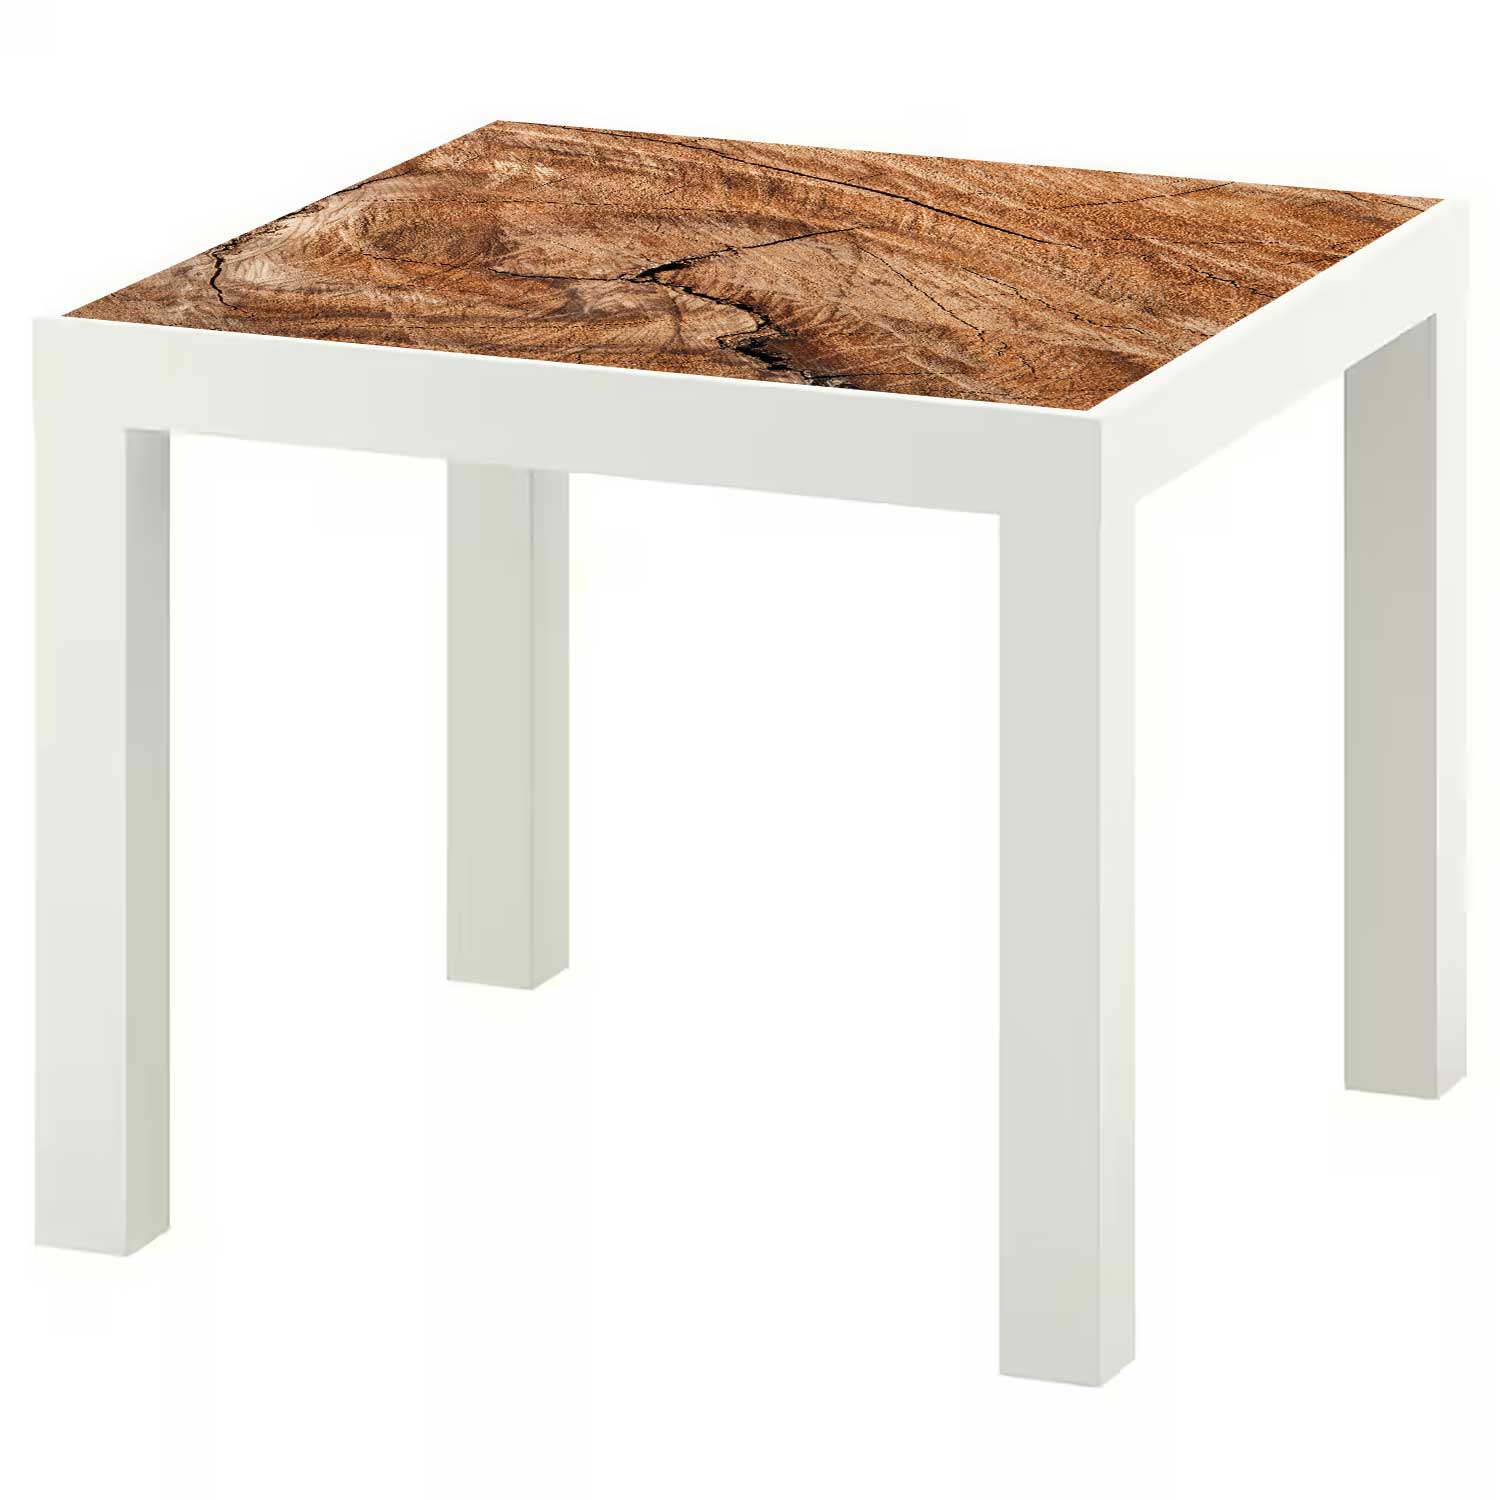 Möbelfolie für IKEA Lack Tisch 55x55 cm 'Holz Rustikal'